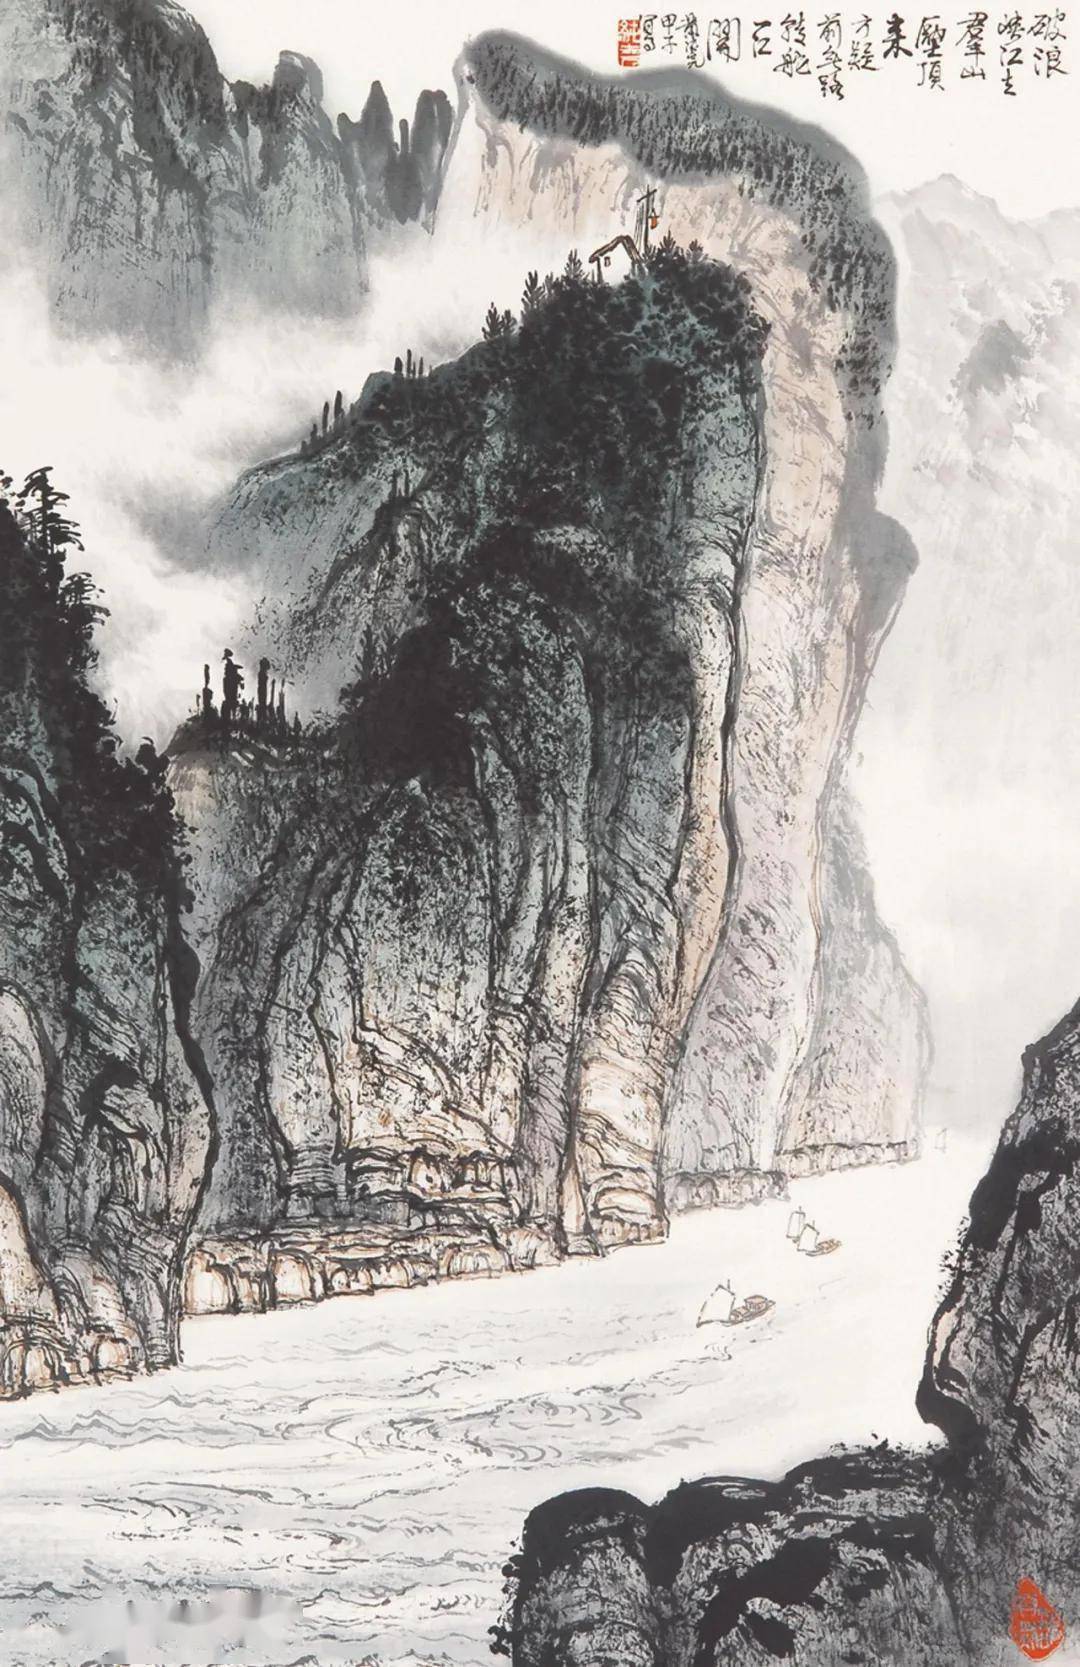 黄纯尧是一位学者型山水画大家,从70年代后期致力于长江三峡的研究